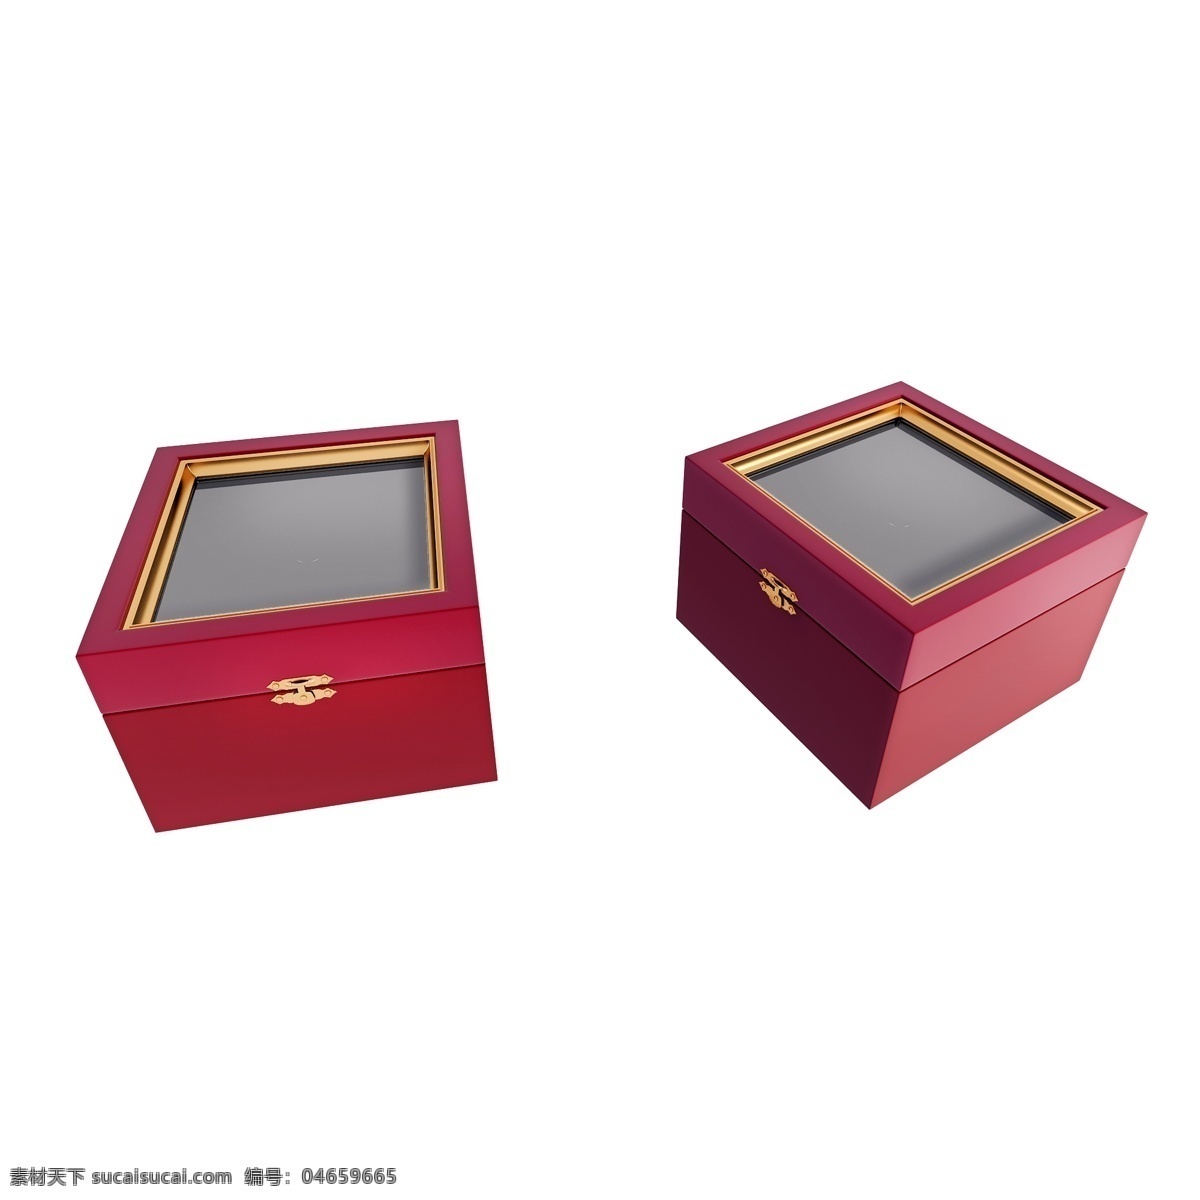 立体 红色 透明 礼盒 图 收纳盒 盒子 母亲节 质感 精致礼物 仿真 3d 创意 套图 png图